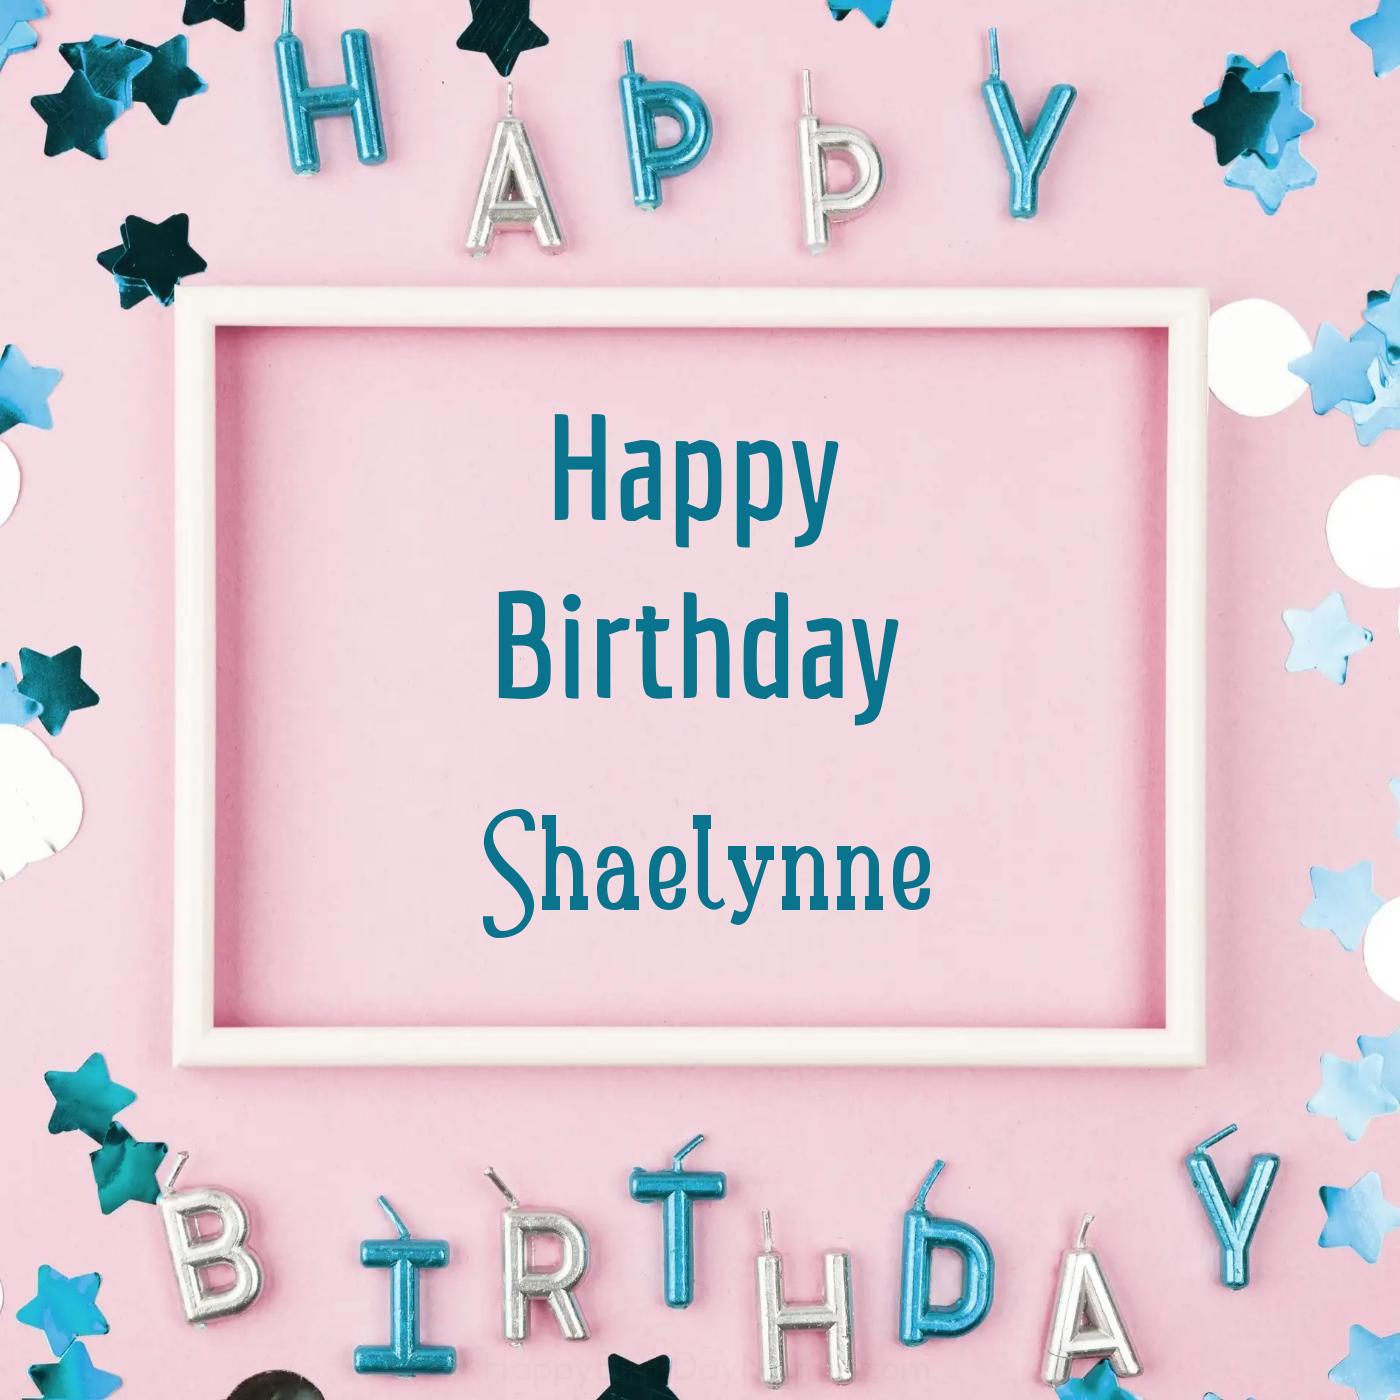 Happy Birthday Shaelynne Pink Frame Card